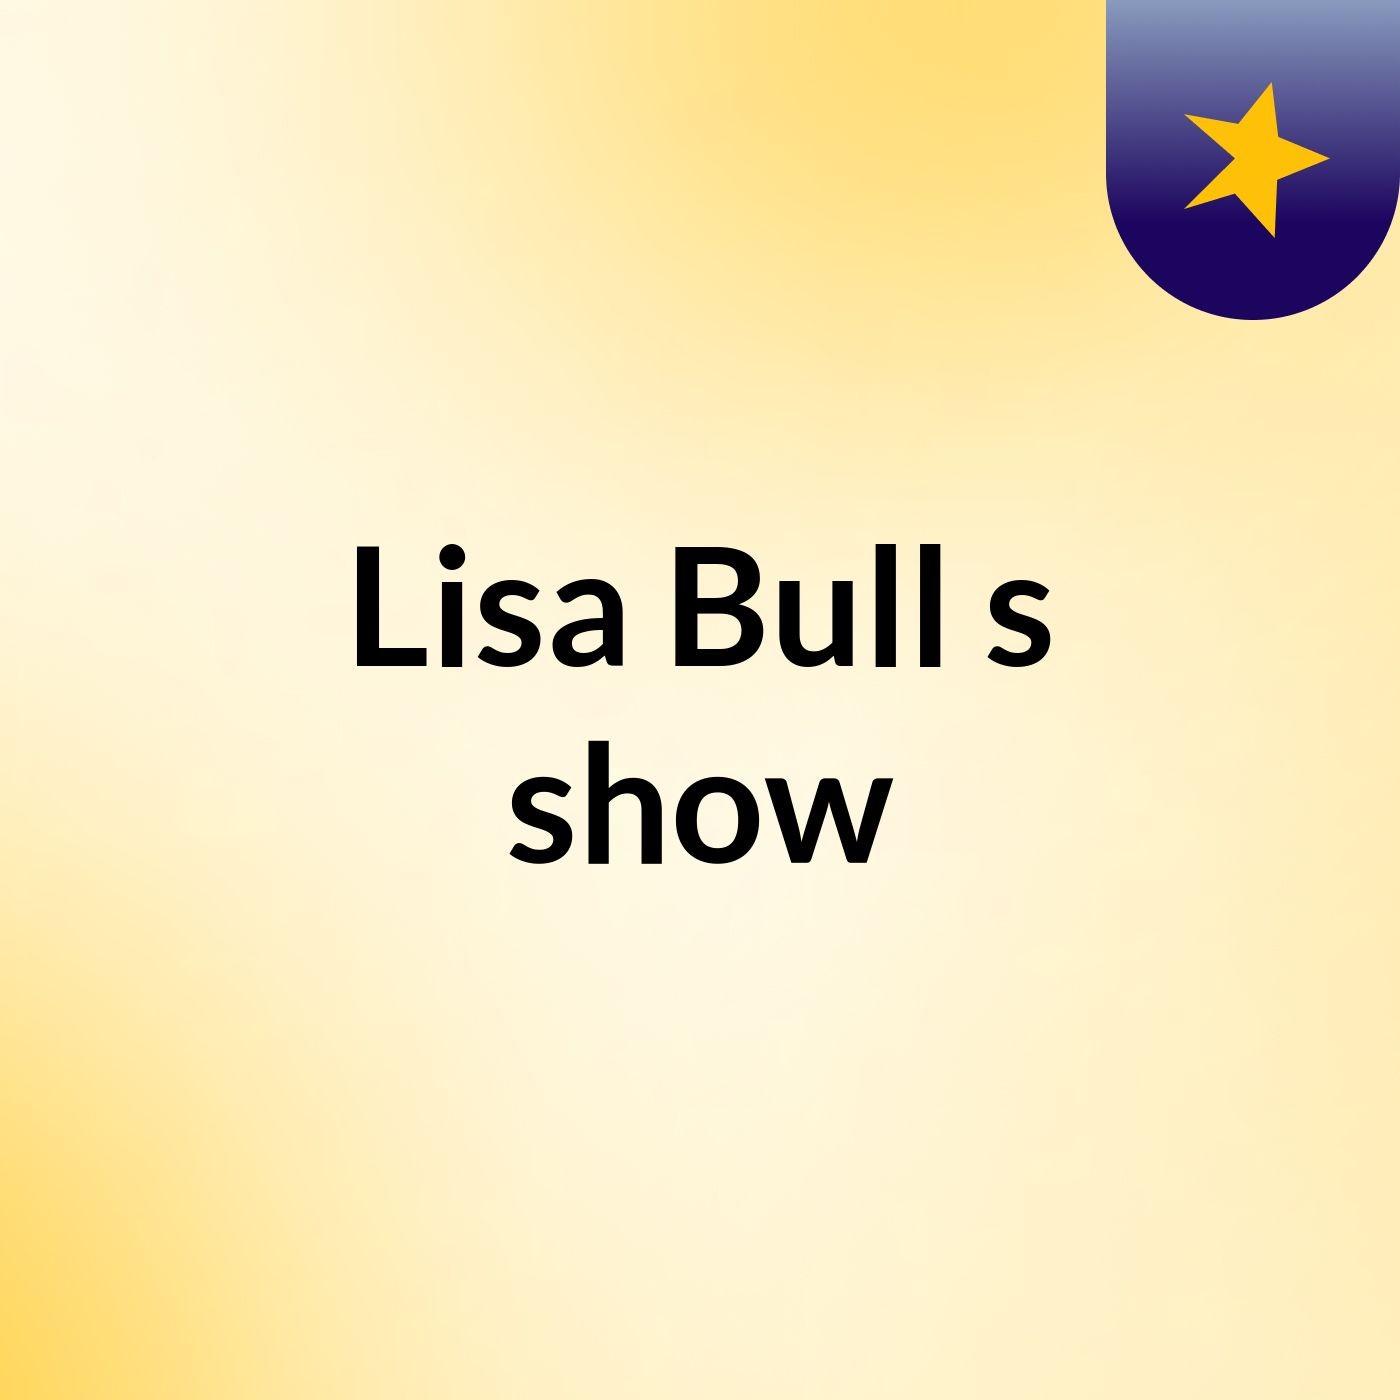 Lisa Bull's show